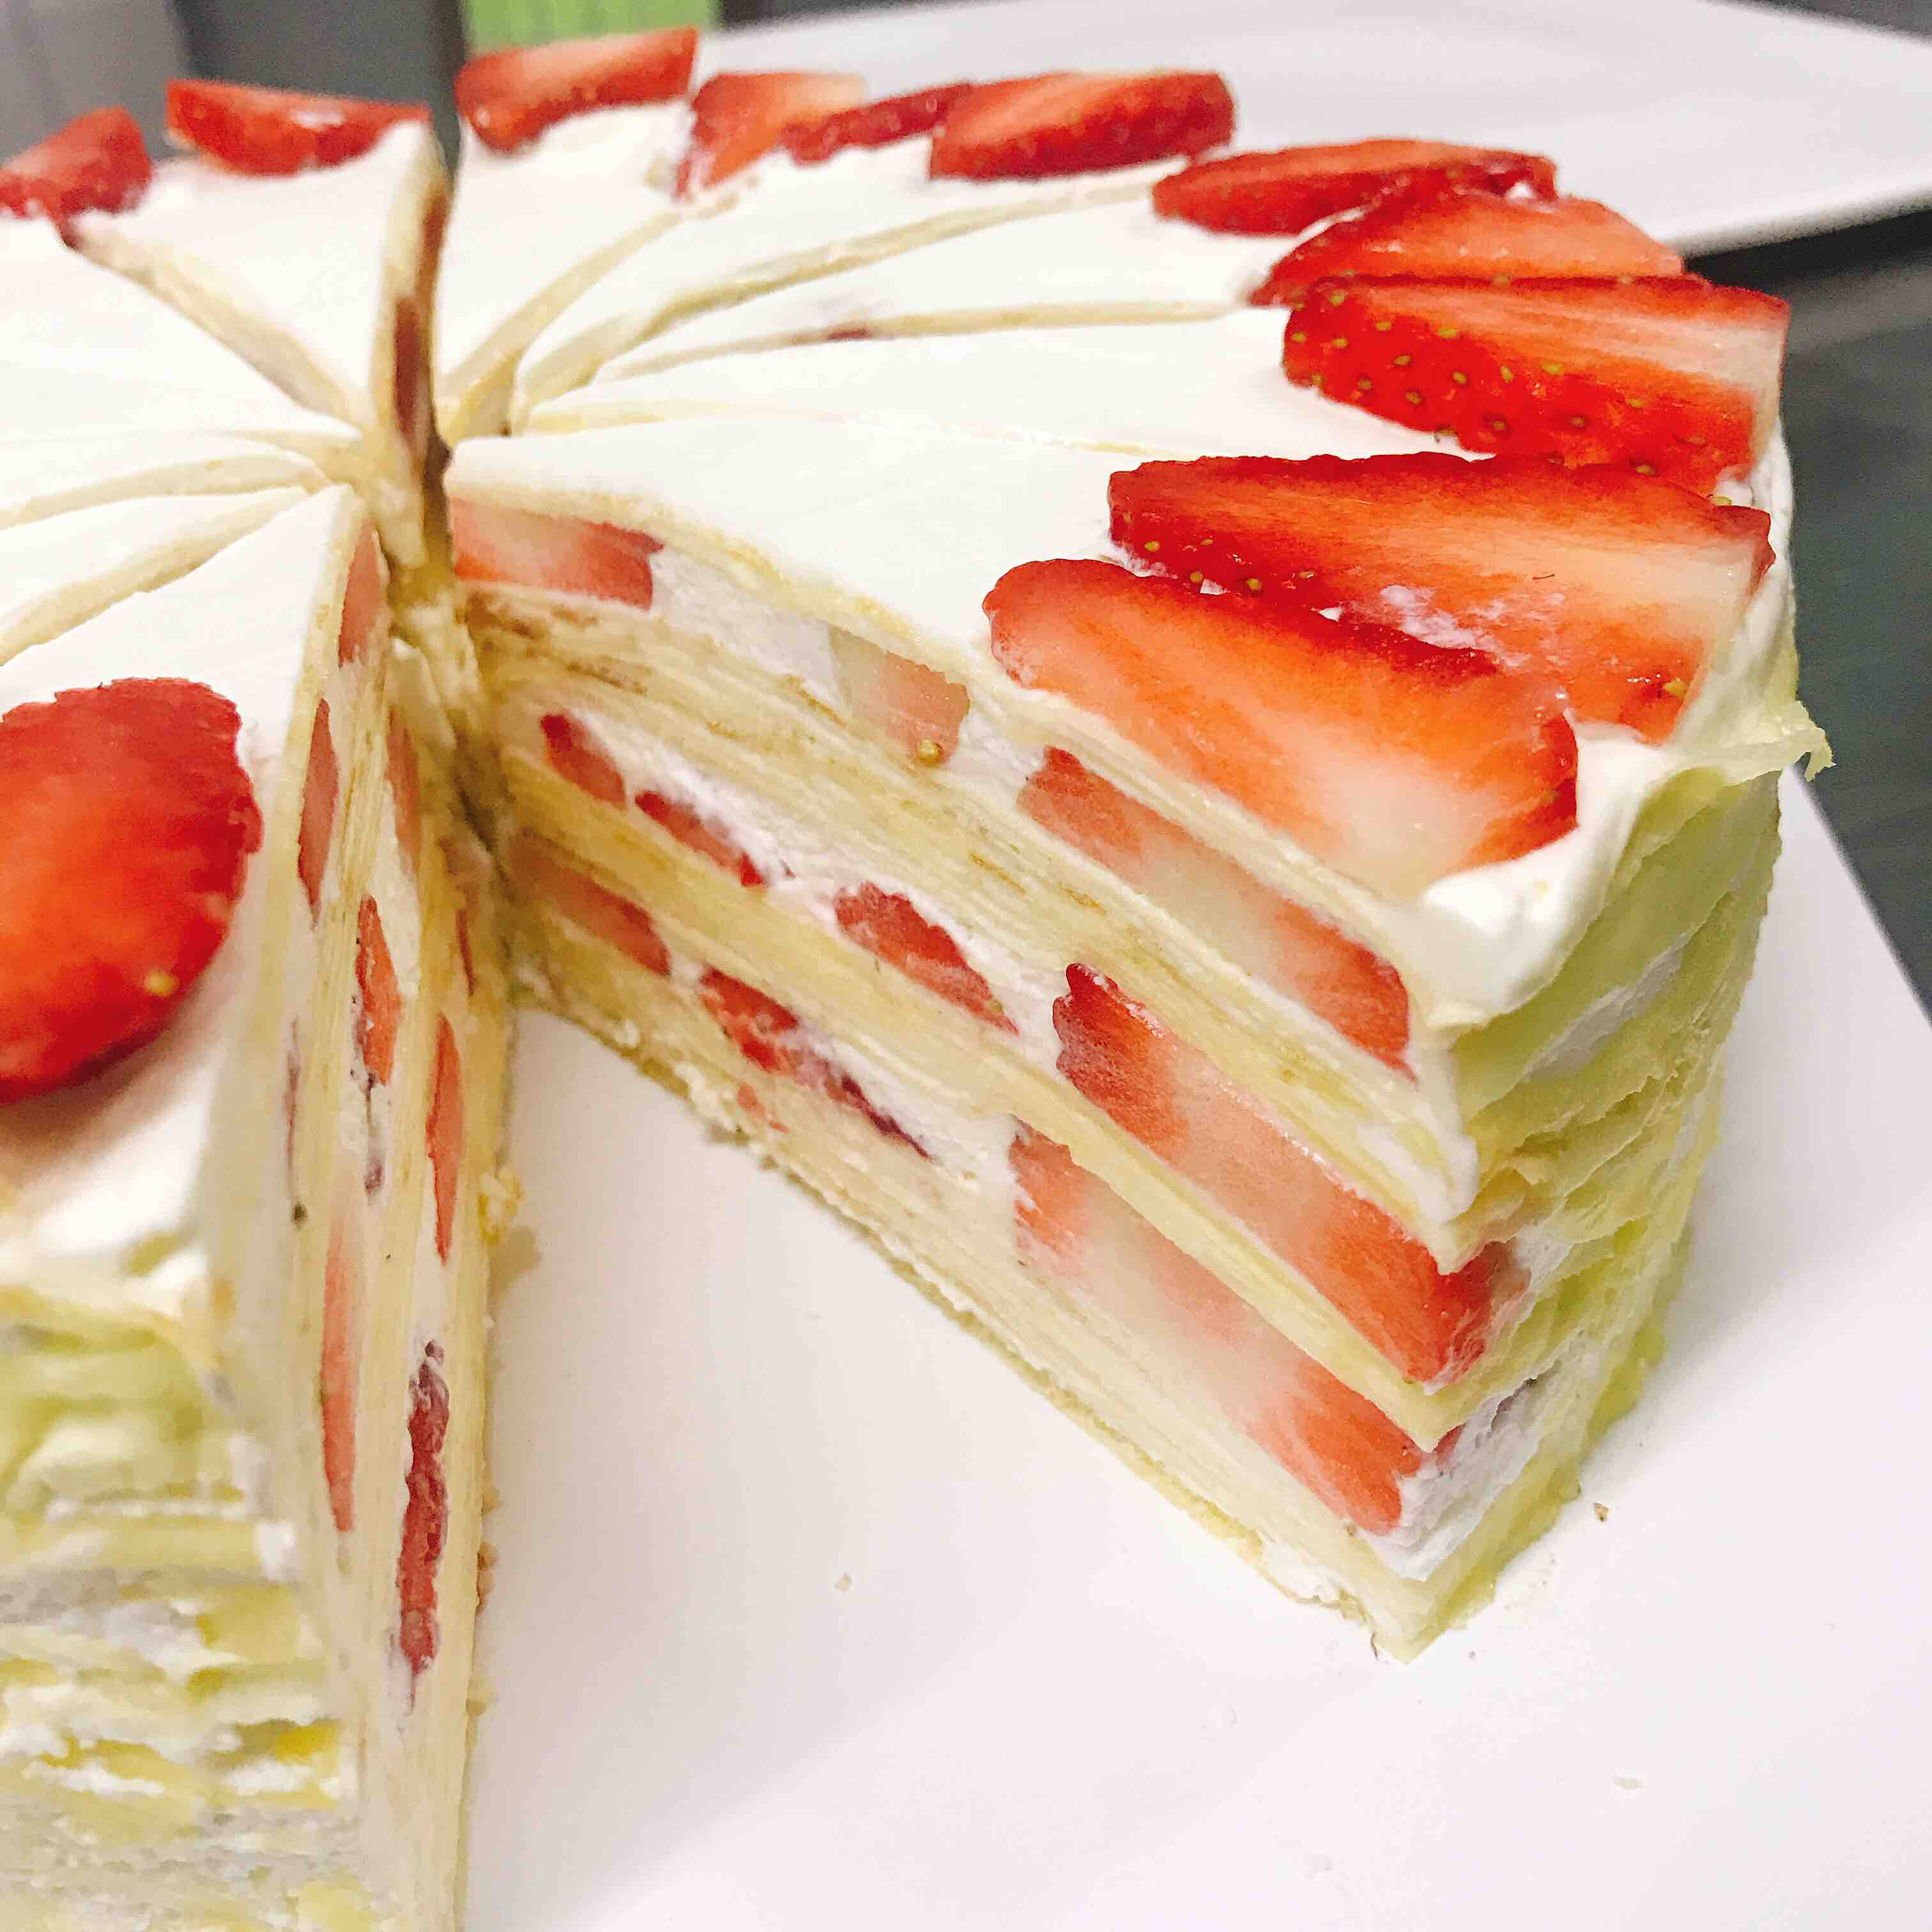 法式草莓千层蛋糕(8寸)请提前两天预定